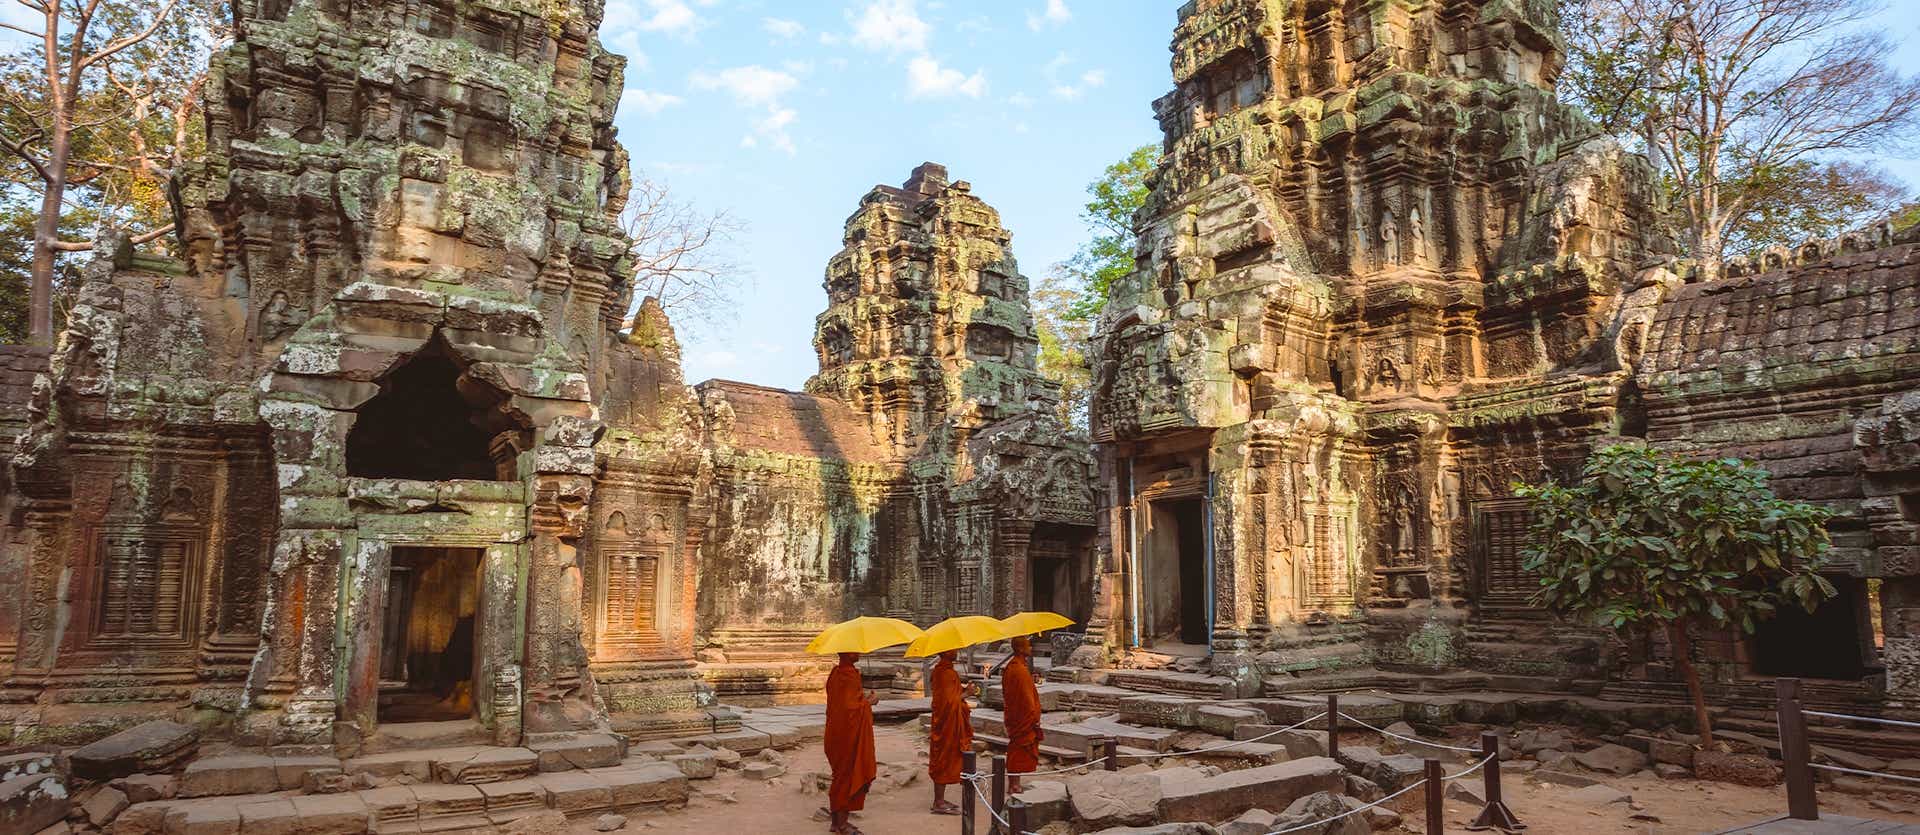 Angkor Vat  <span class="iconos separador"></span> Cambodge